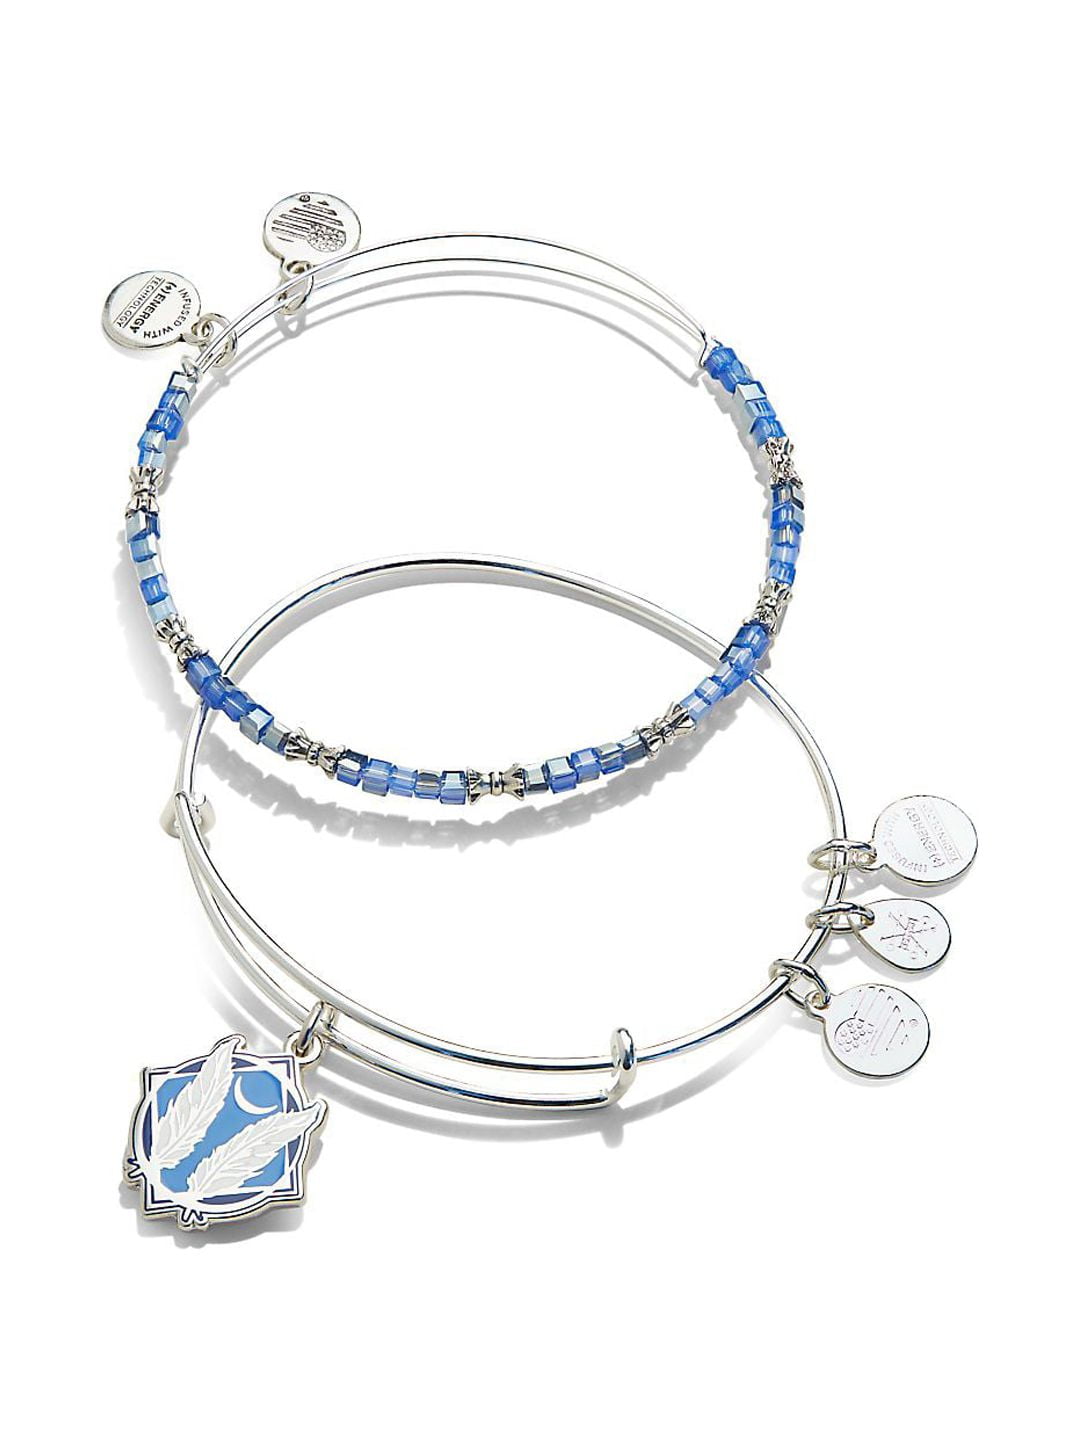 Louis Vuitton MONOGRAM Lv confidential bracelet (M6334E)  Engraved  monogram, Women accessories jewelry, Louis vuitton monogram